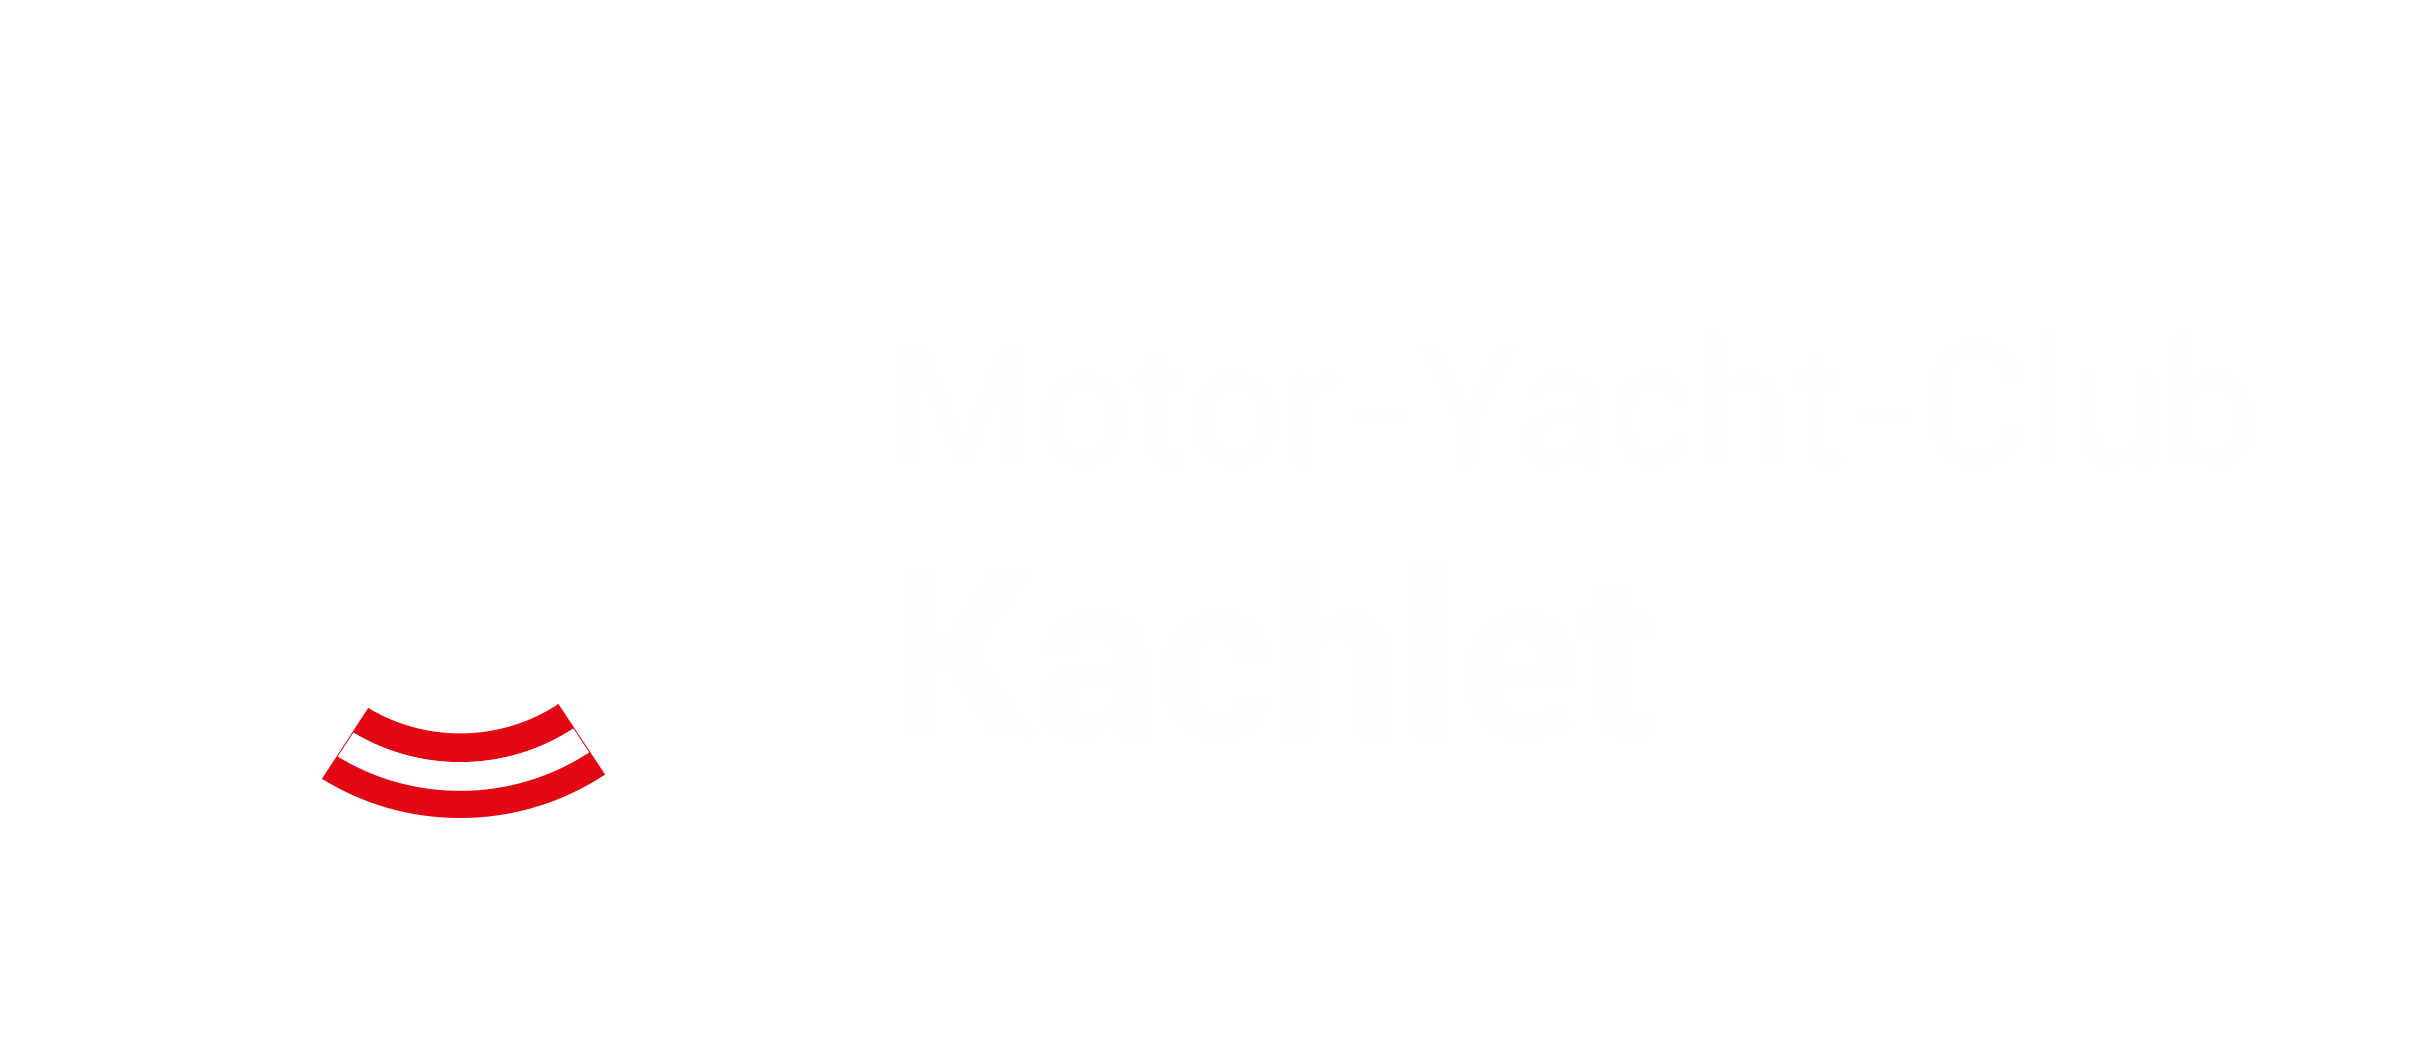 Motor-Yacht-Club Kachlet - Herzlich Willkommen in Landshaag